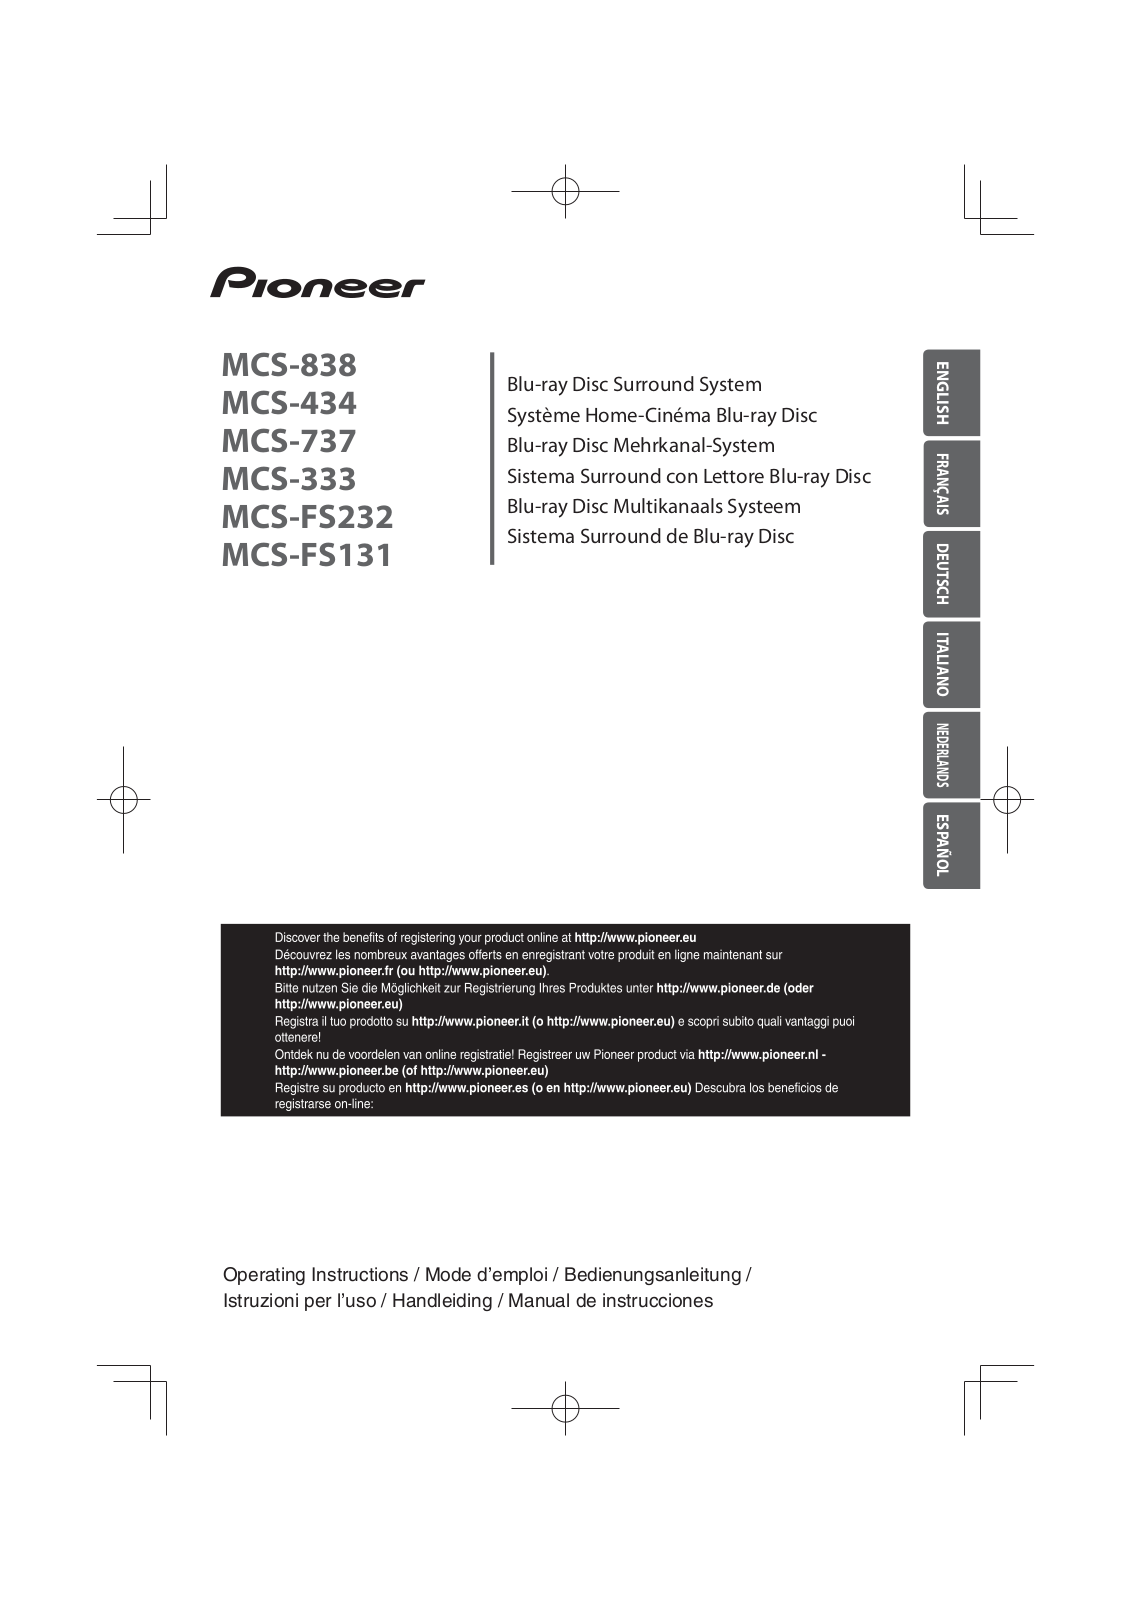 PIONEER MCS-333, MCS-434, MCS-737, MCS-838, MCS-FS232 User Manual